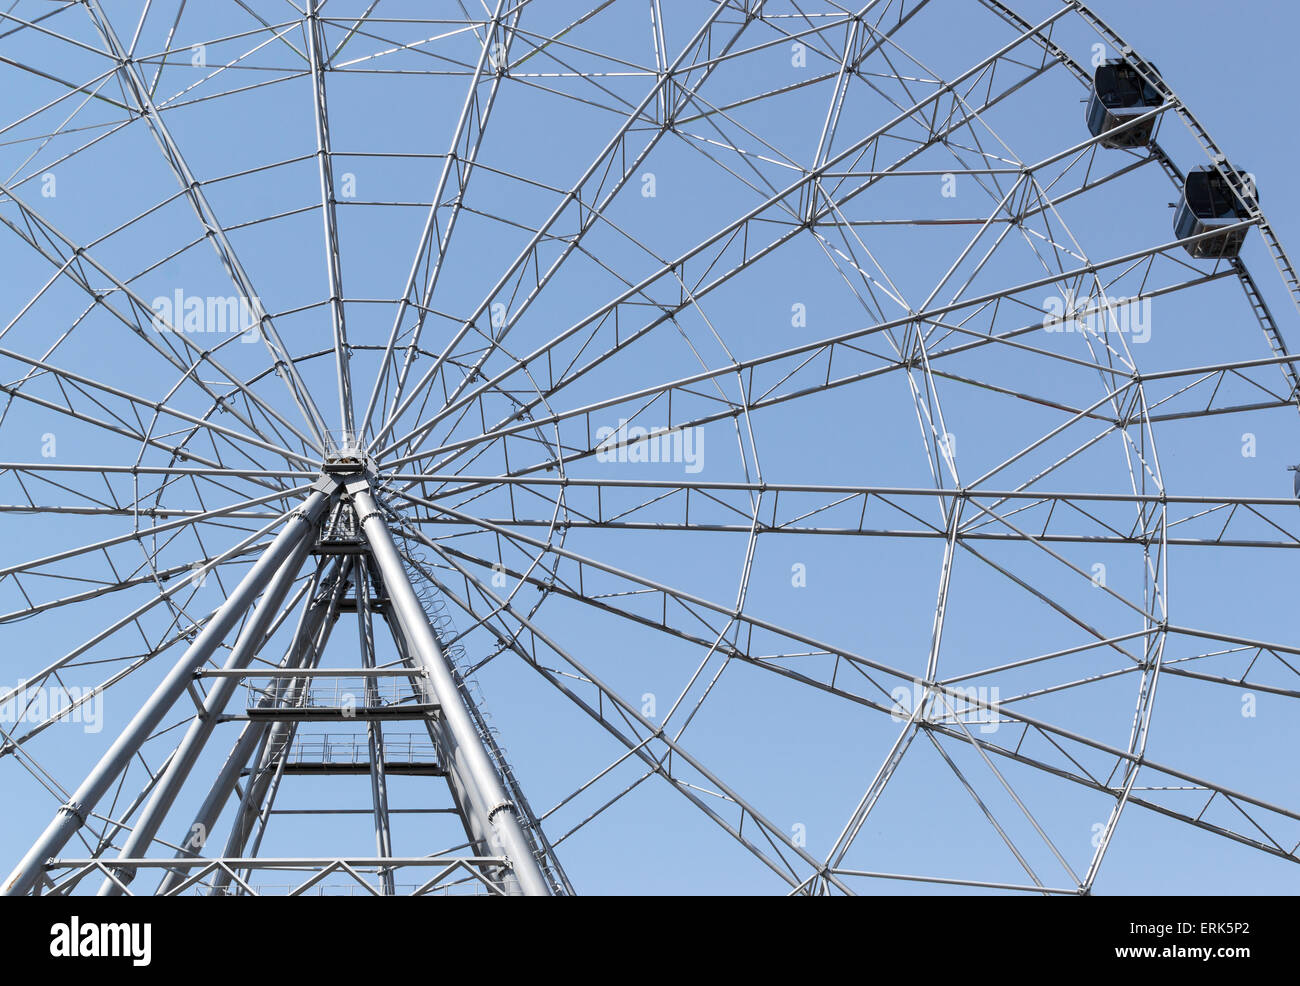 Sommer Ferris Whell in Ufa-Russland gegen einen blauen Himmel ohne Wolken Stockfoto